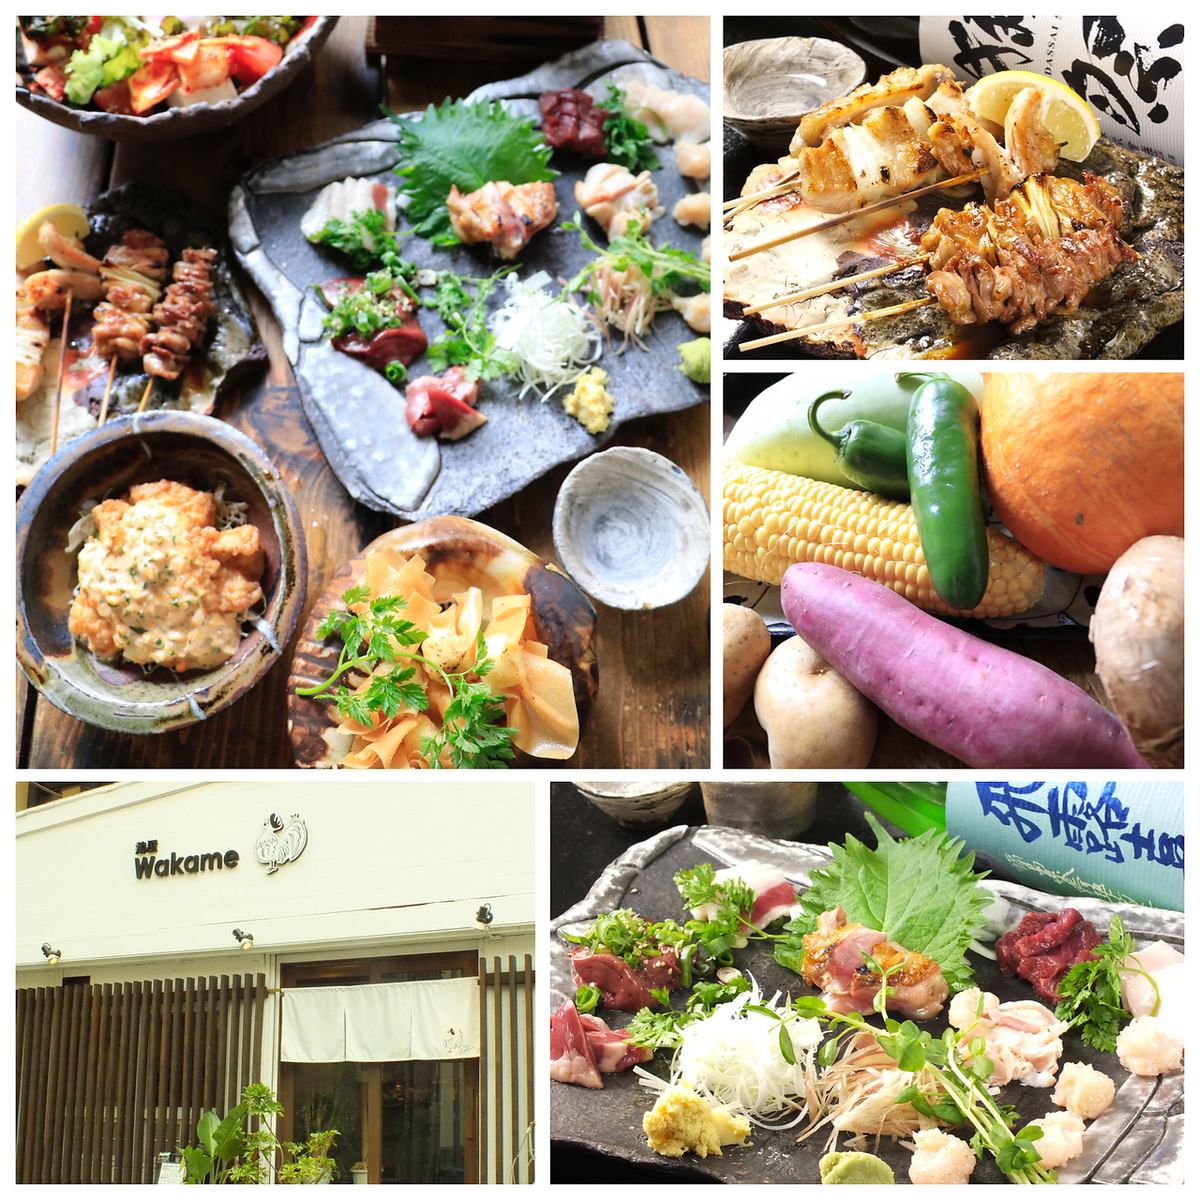 ◆在大鳥居站可以品嚐到各種清酒的雞肉，蔬菜和特色菜的日式烤雞肉串◆